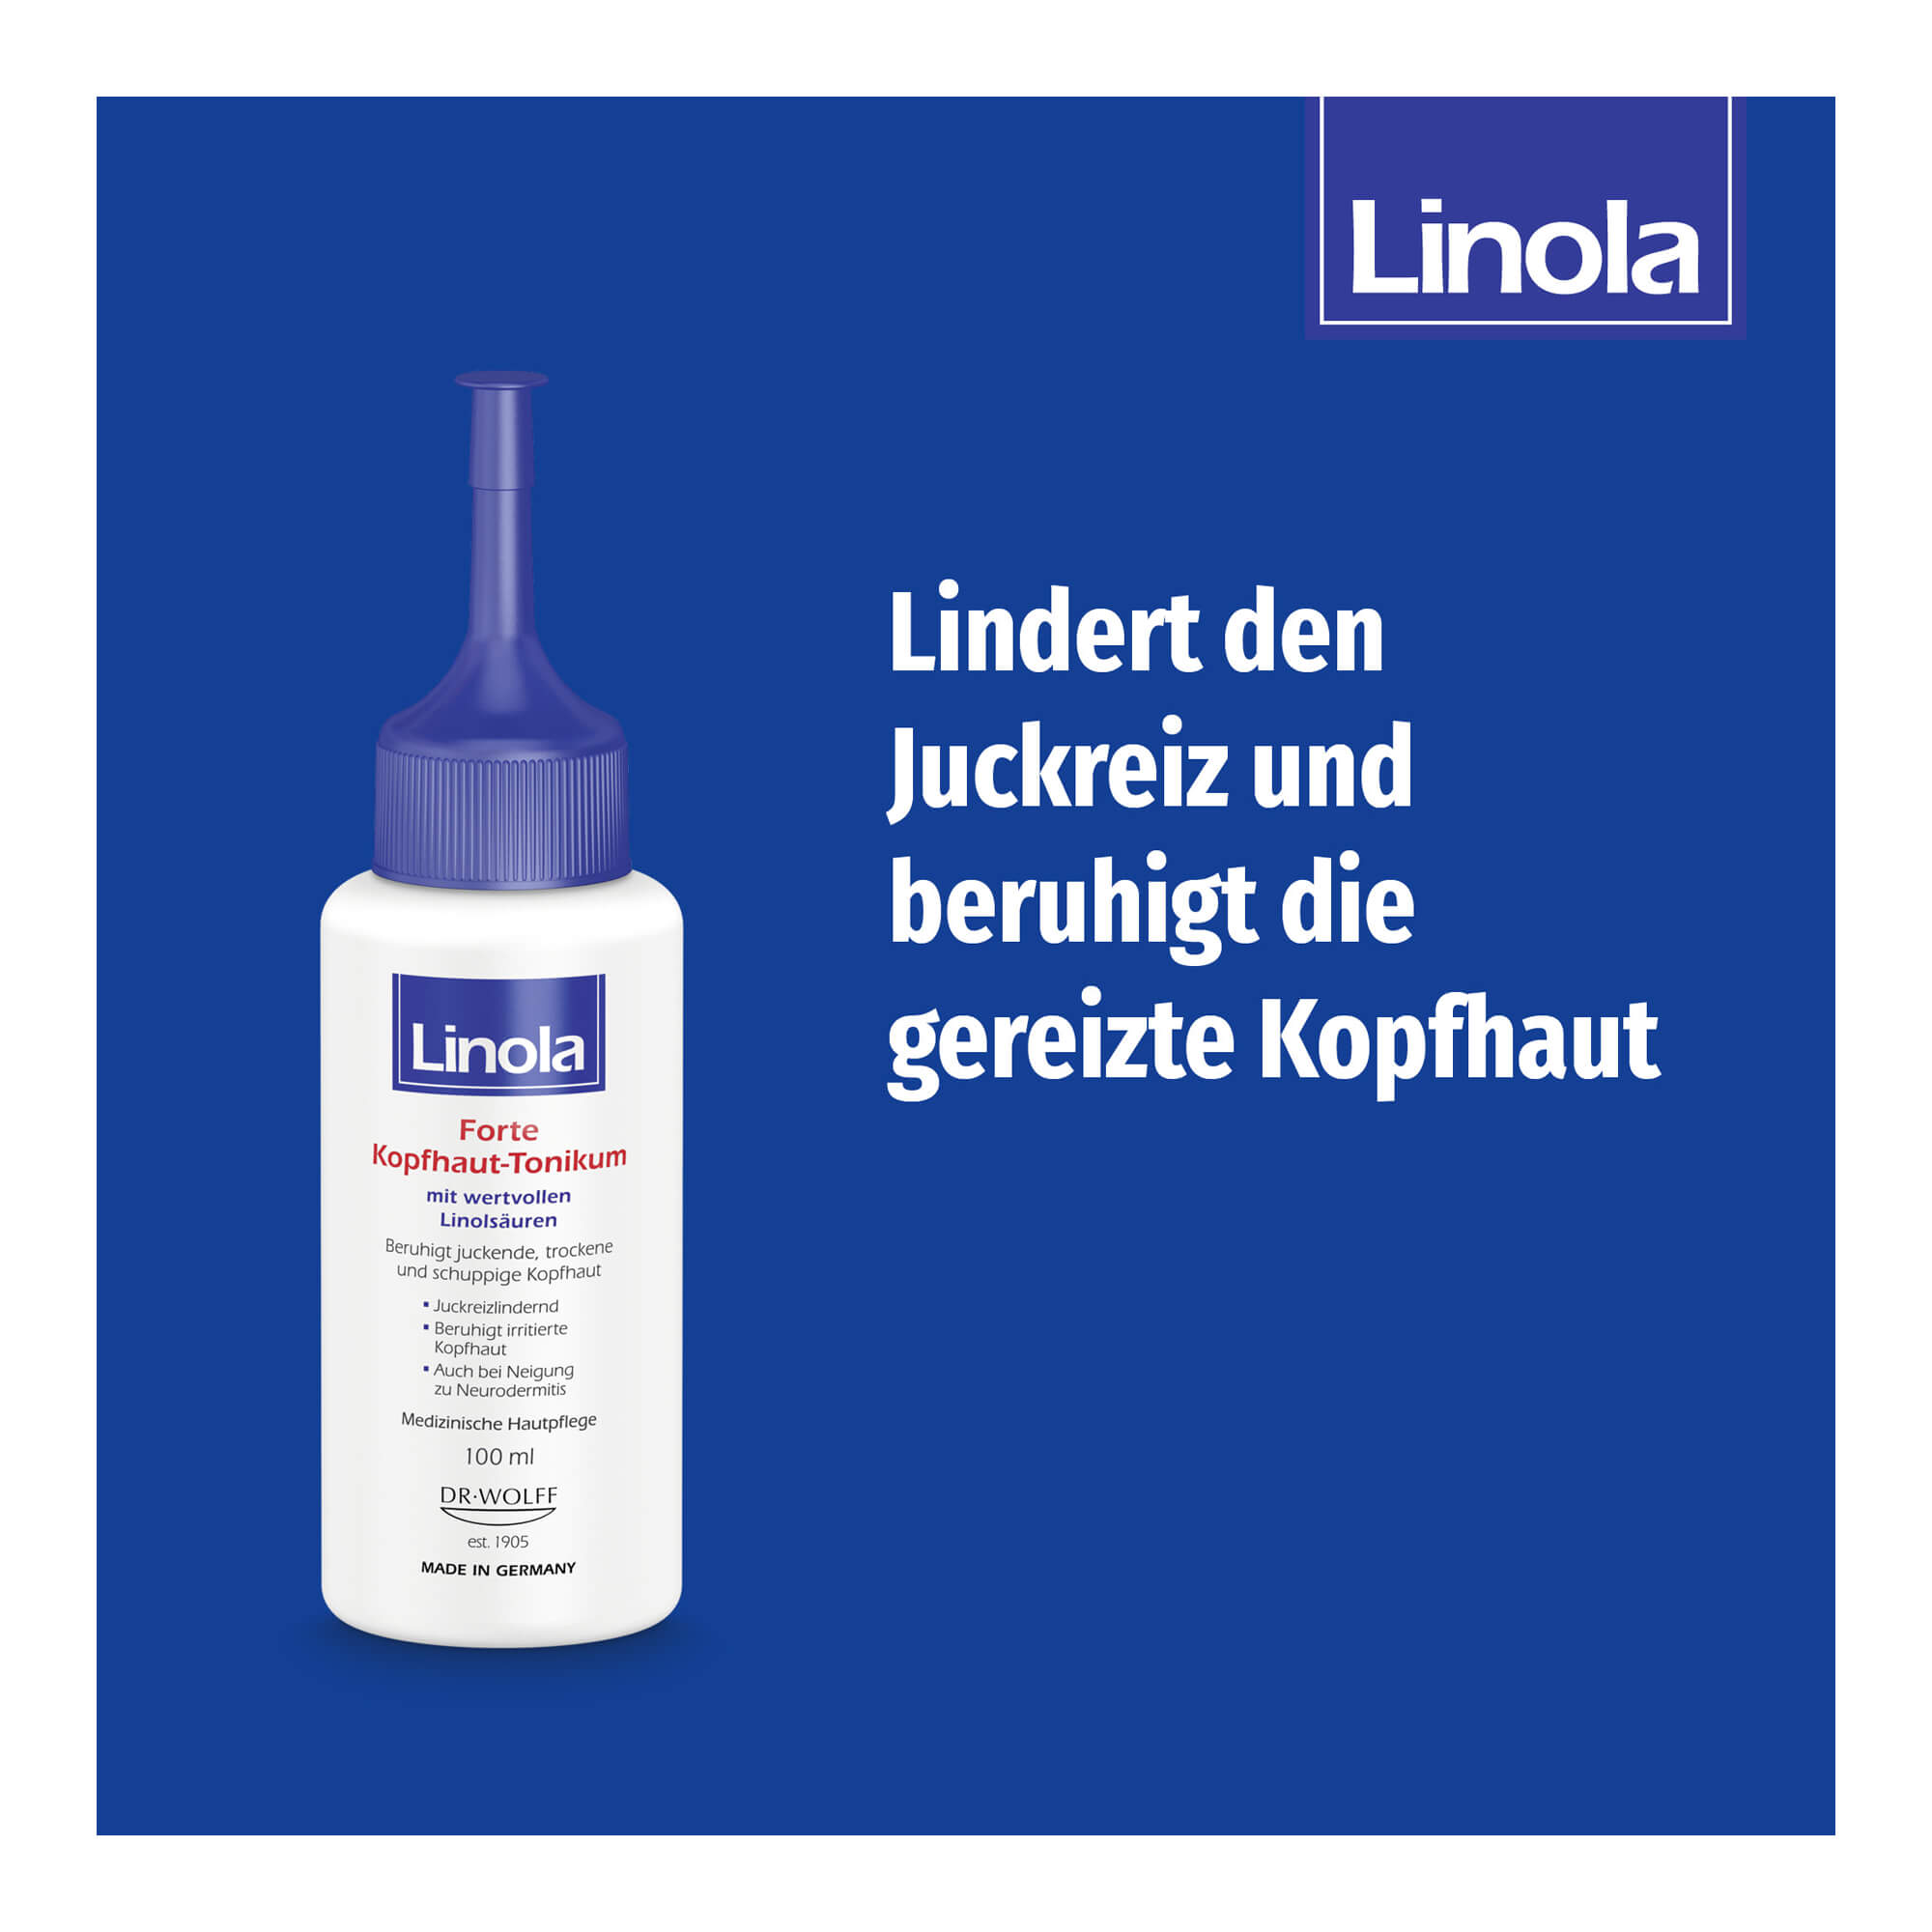 Grafik Linola Forte Kopfhaut-Tonikum Lindert den Juckreiz und beruhigt die gereizte Kopfhaut